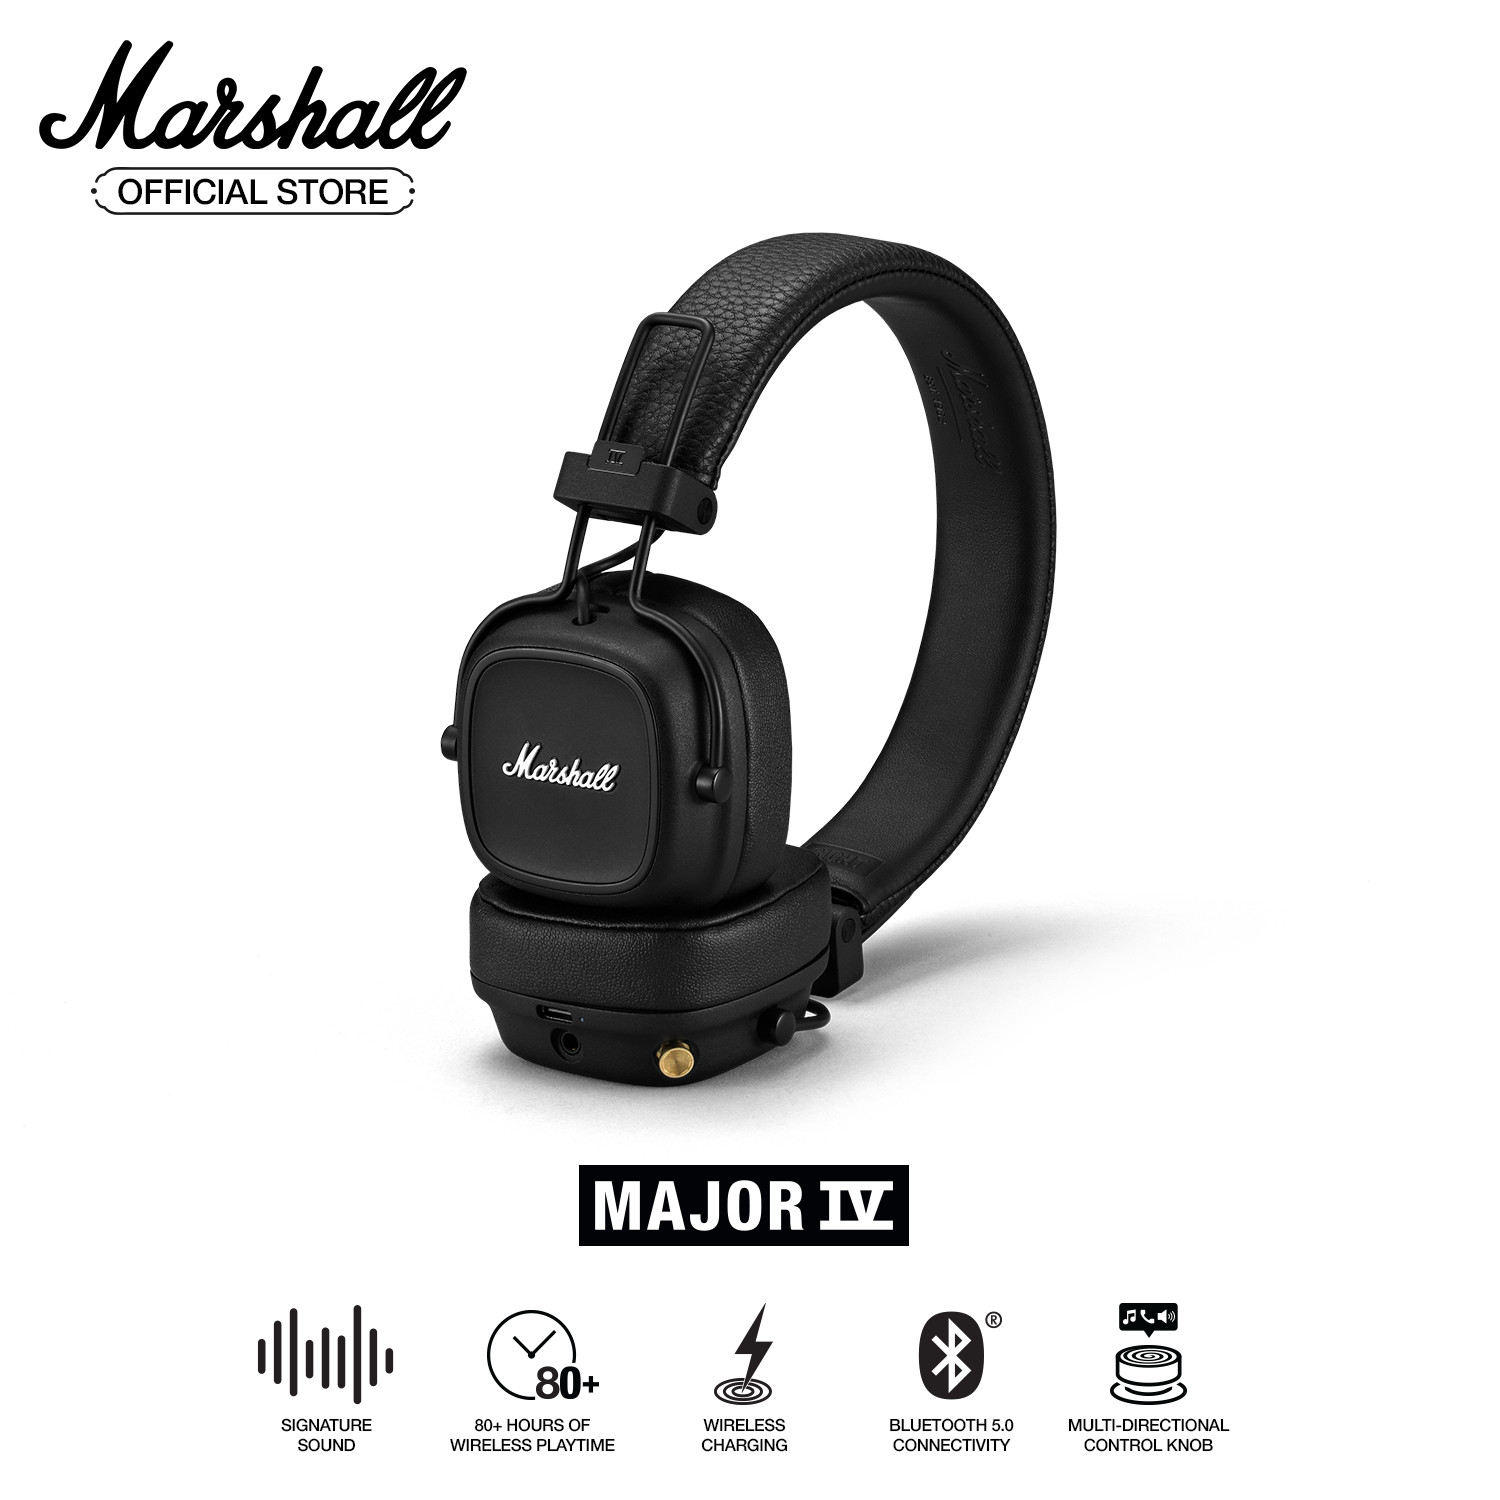 [Hàng chính hãng] Tai nghe Bluetooth Marshall Major IV - 80 giờ nghe nhạc không dây